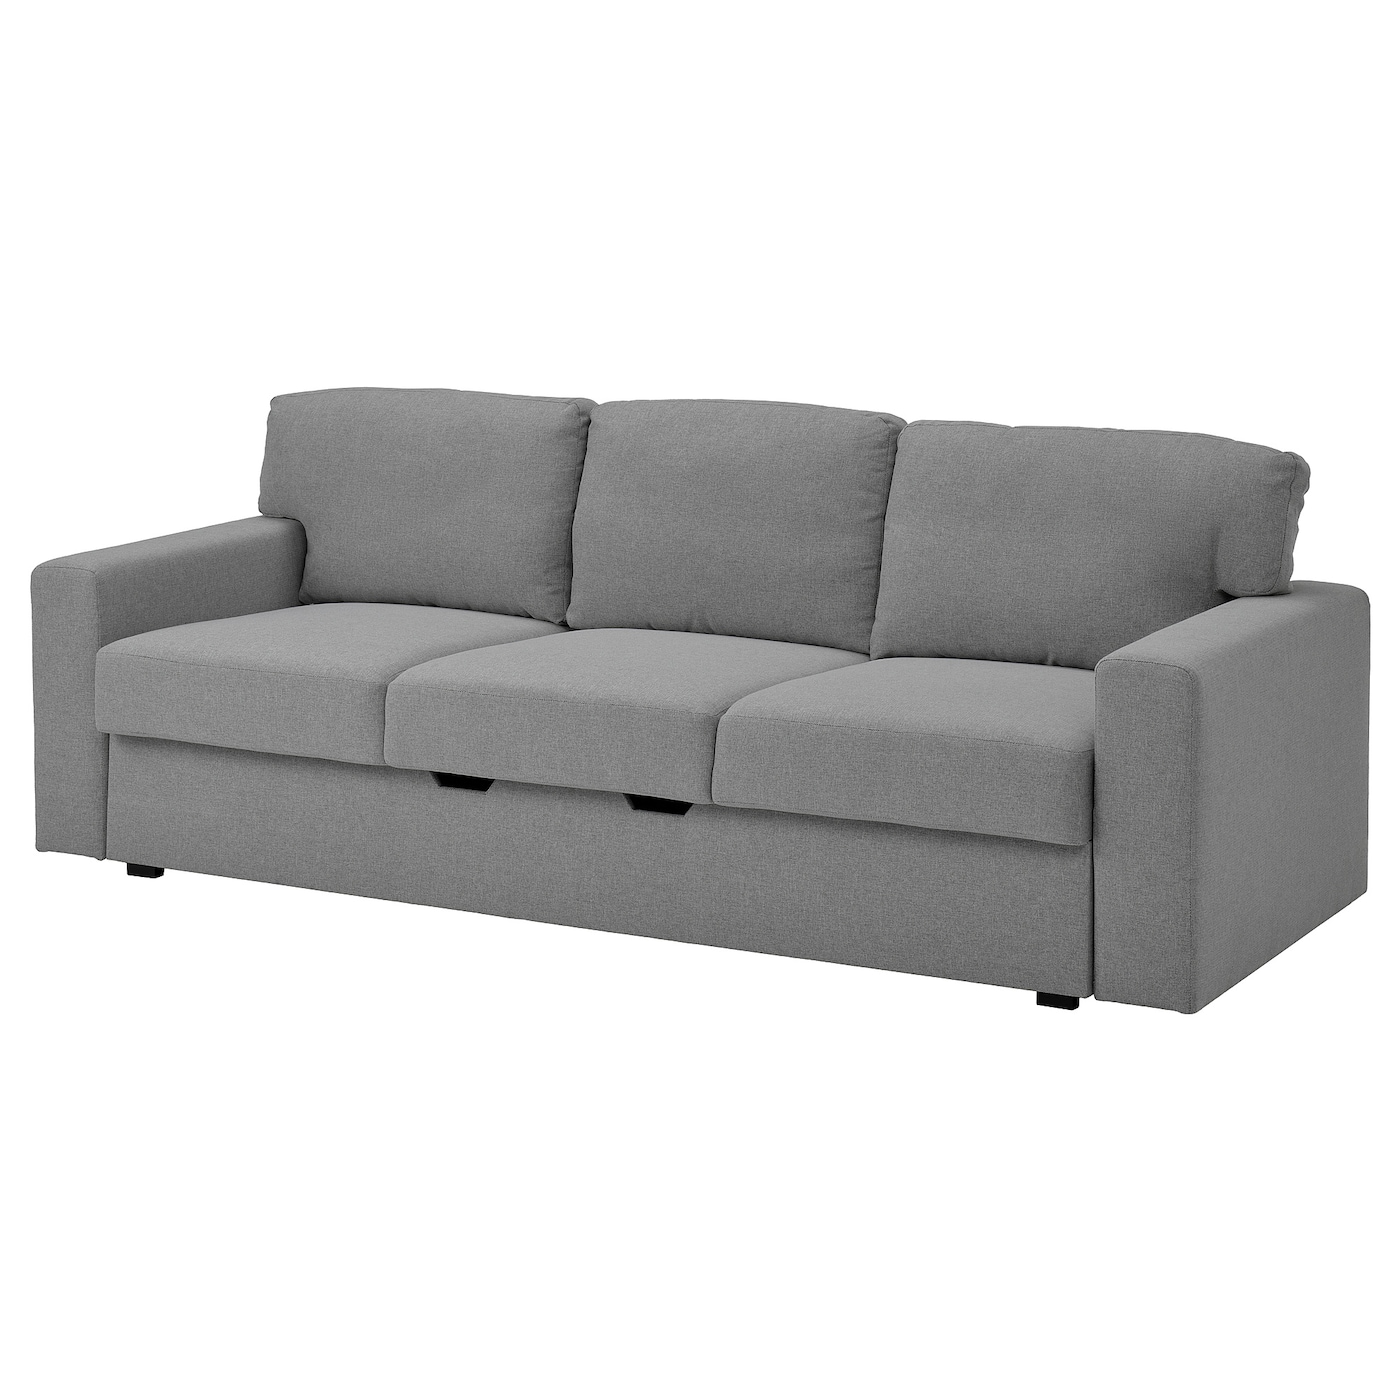 диван кровать малютка 2 кордрой бежевый БОРСЛОВ 3-местный диван-кровать, Тибблби бежевый/серый BÅRSLÖV IKEA